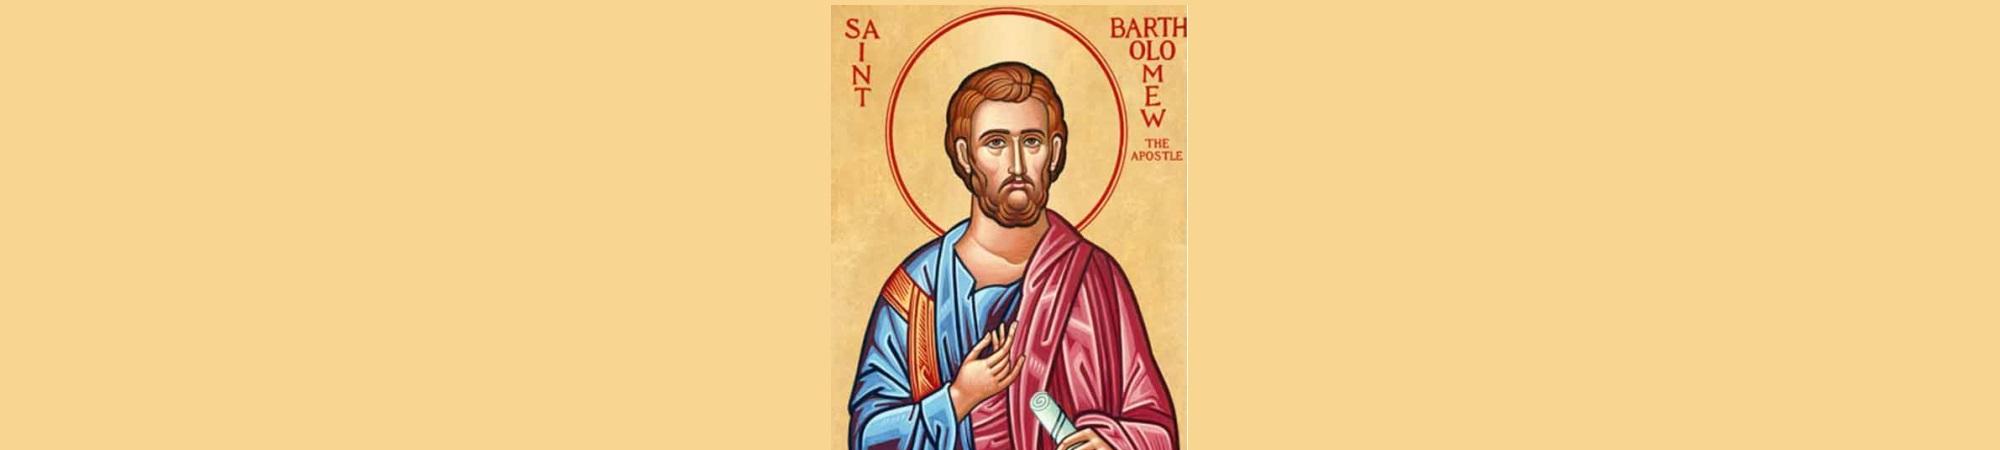 Image of Saint Bartholomew, Eastern Orthodox style icon. 